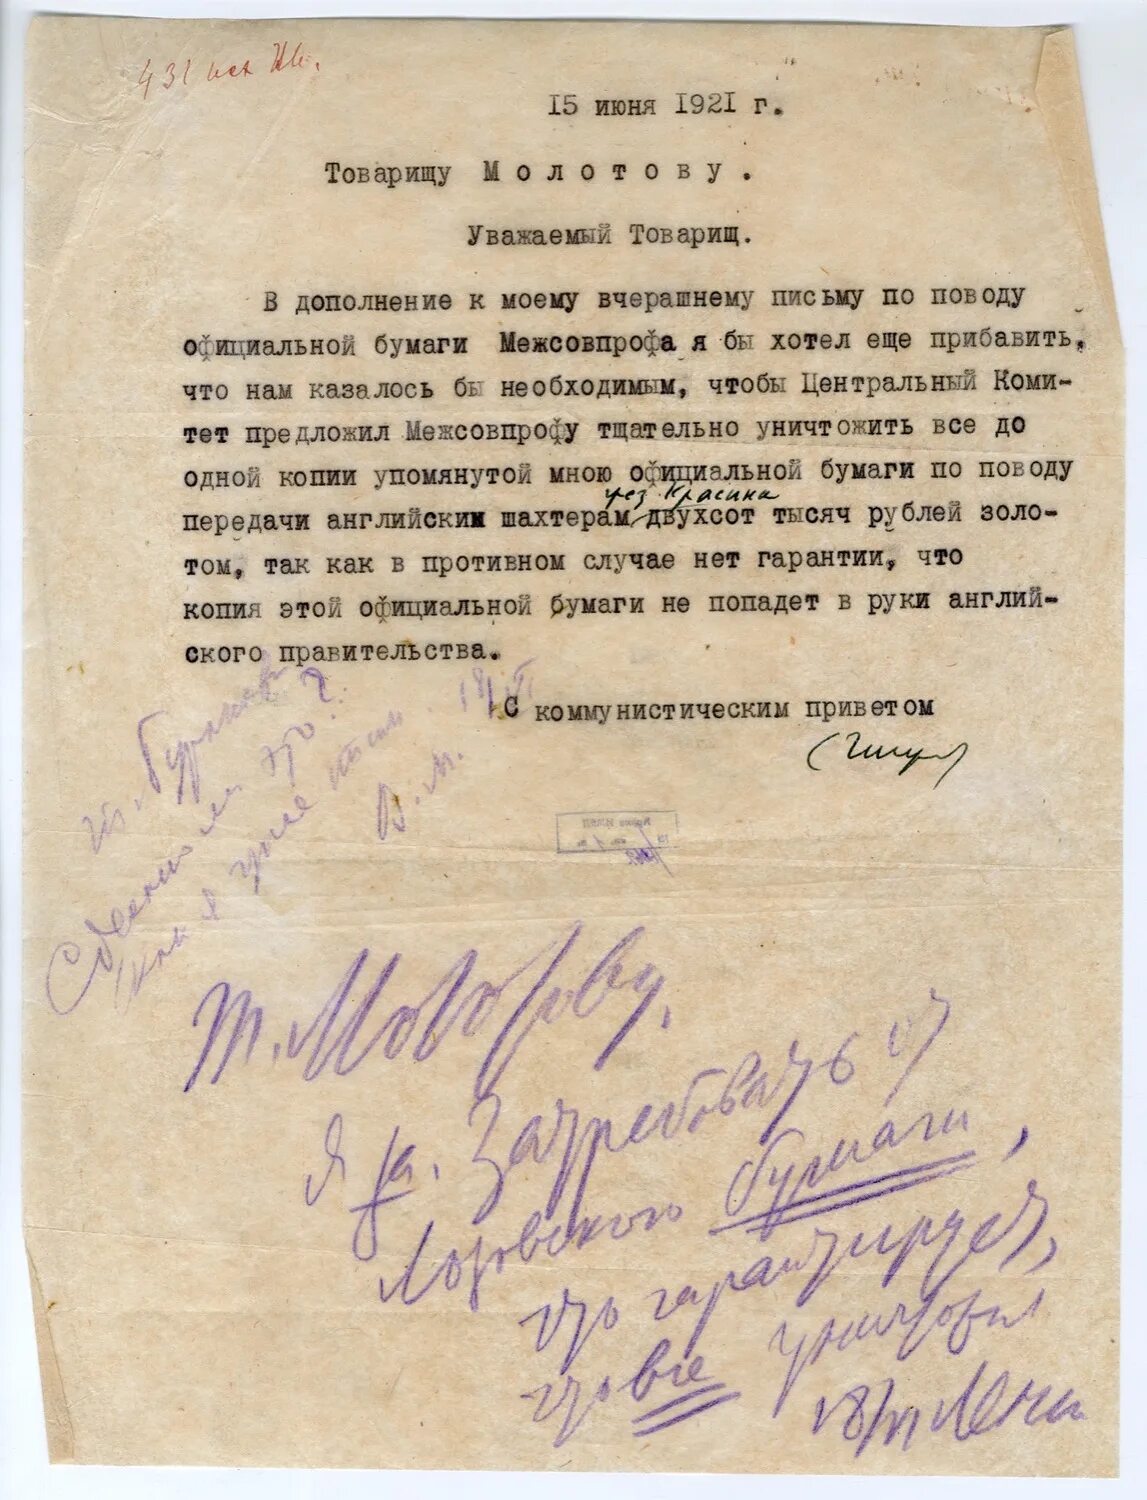 Что заставило сталина написать письмо ленину. Резолюции Ленина. Документ Ленина 1921. Резолюции Сталина на документах. Документы Ленина.